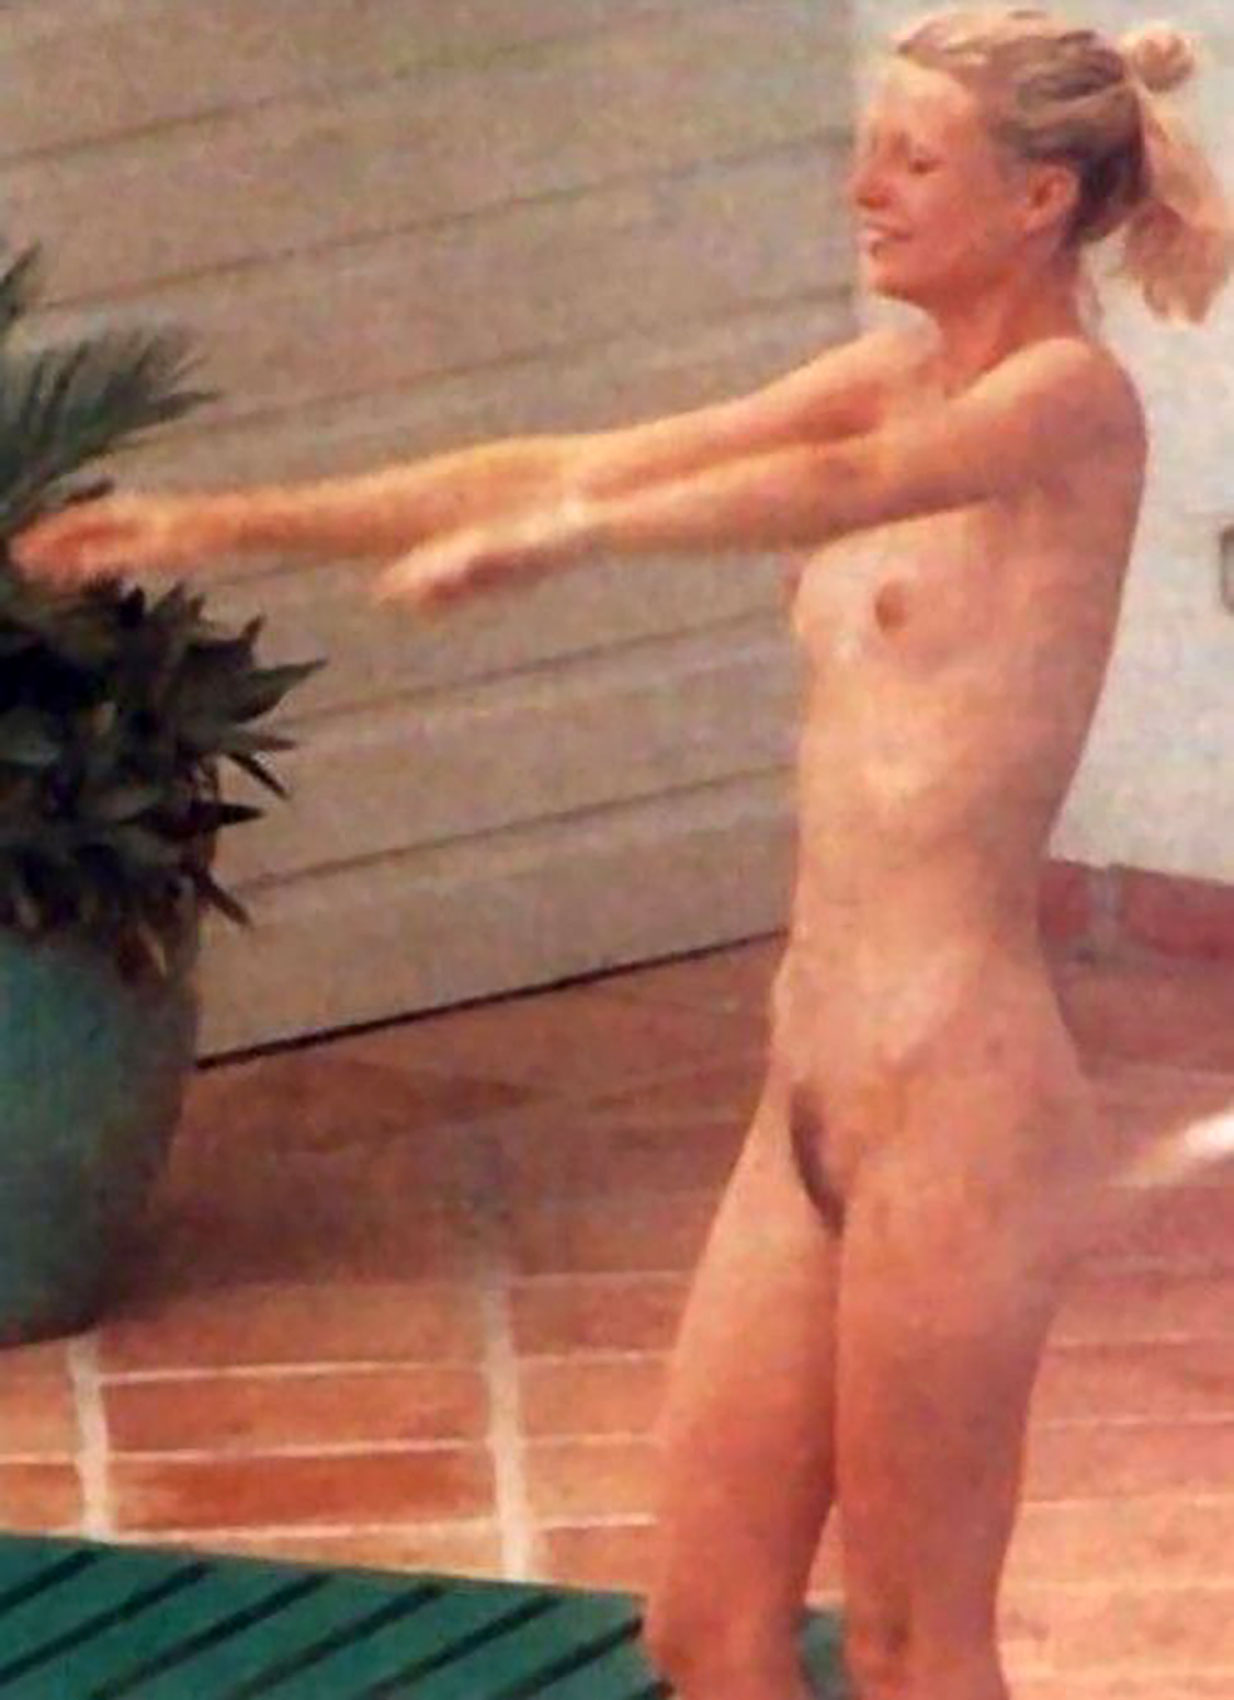 Gwyneth paltrow leaked photos